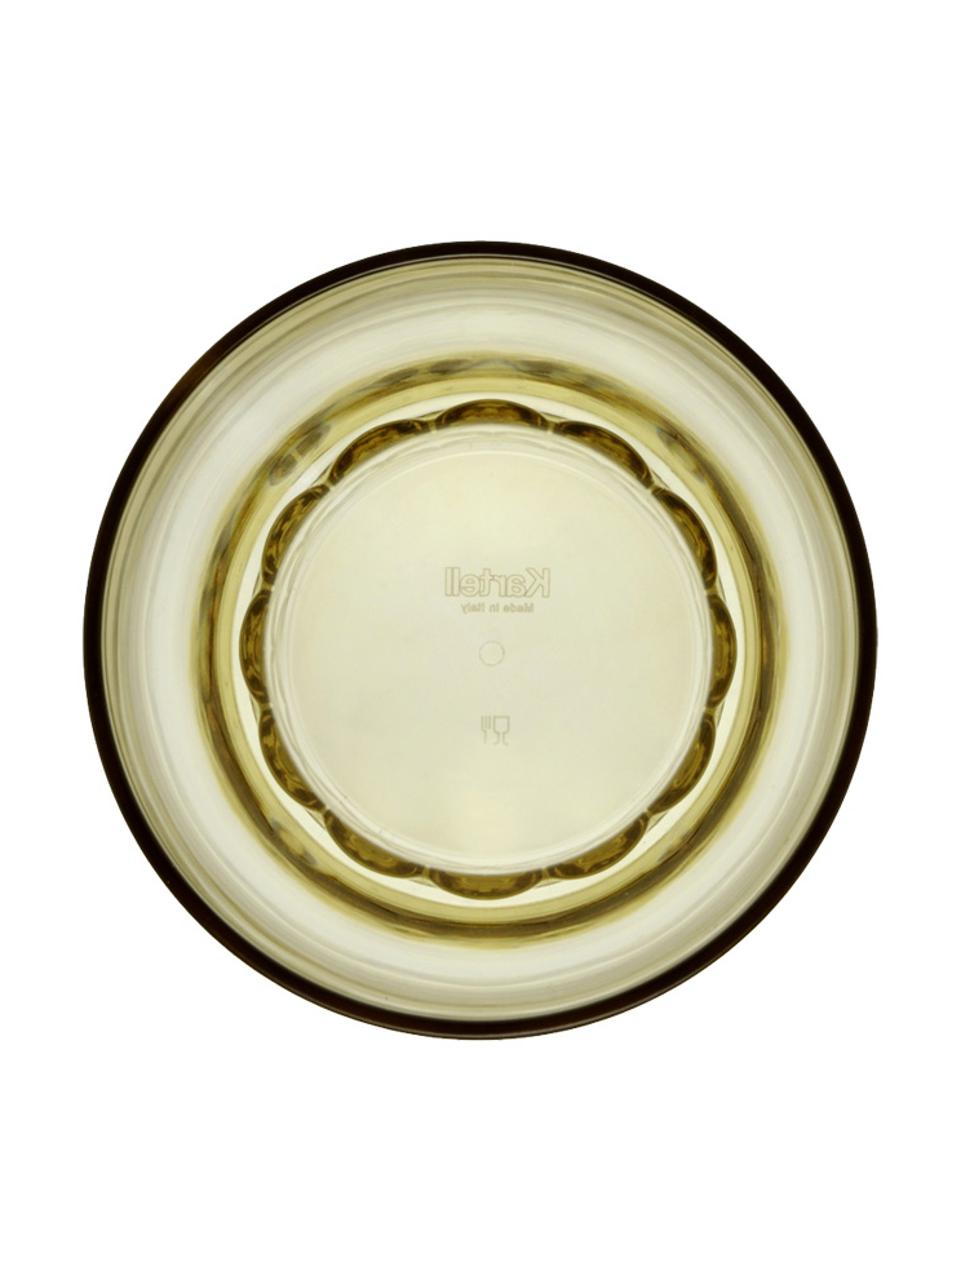 Szklanka do wody Jellies, 4 szt., Tworzywo sztuczne, Jasny zielony, transparentny, Ø 9 x W 13 cm, 460 ml